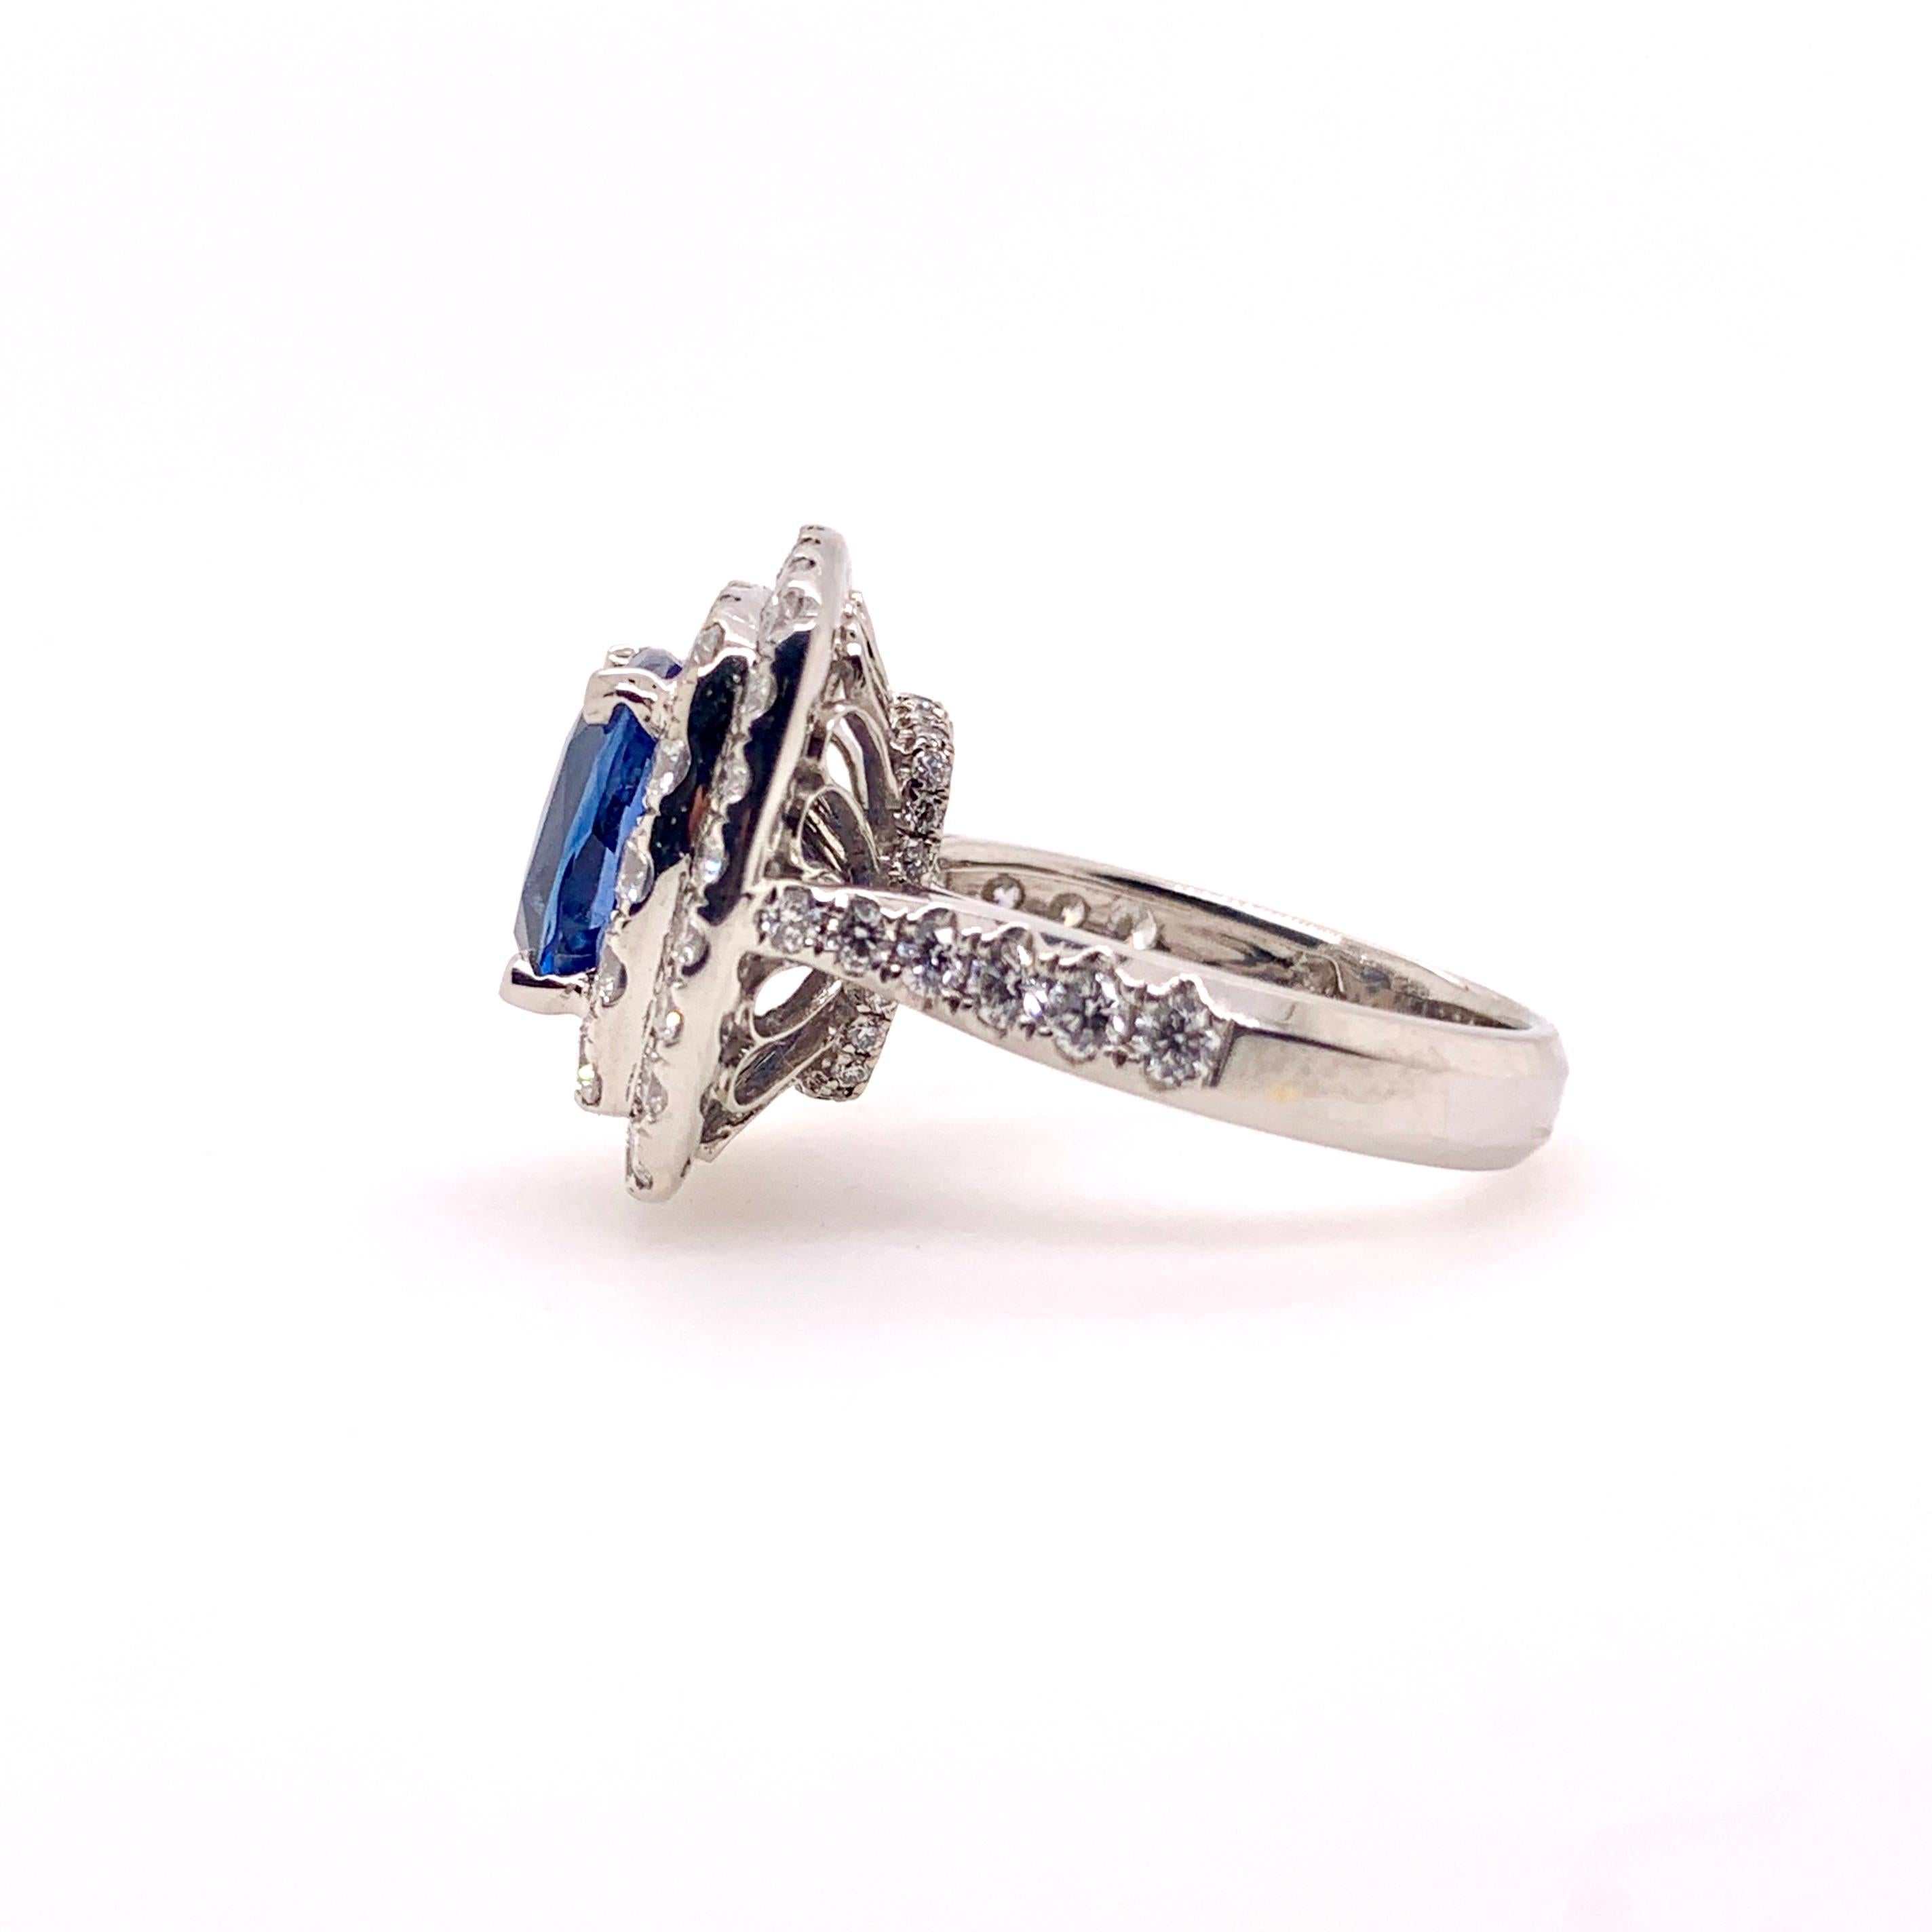 Dieser atemberaubende, samtblaue Saphir in einer doppelten Halo-Diamantenfassung ist ein zeitloser Stil, der alle Blicke auf sich zieht!  Der blaue Saphir von 4,00 Karat ist GIA-zertifiziert und nicht erhitzt.  Die runden Brillanten haben ein